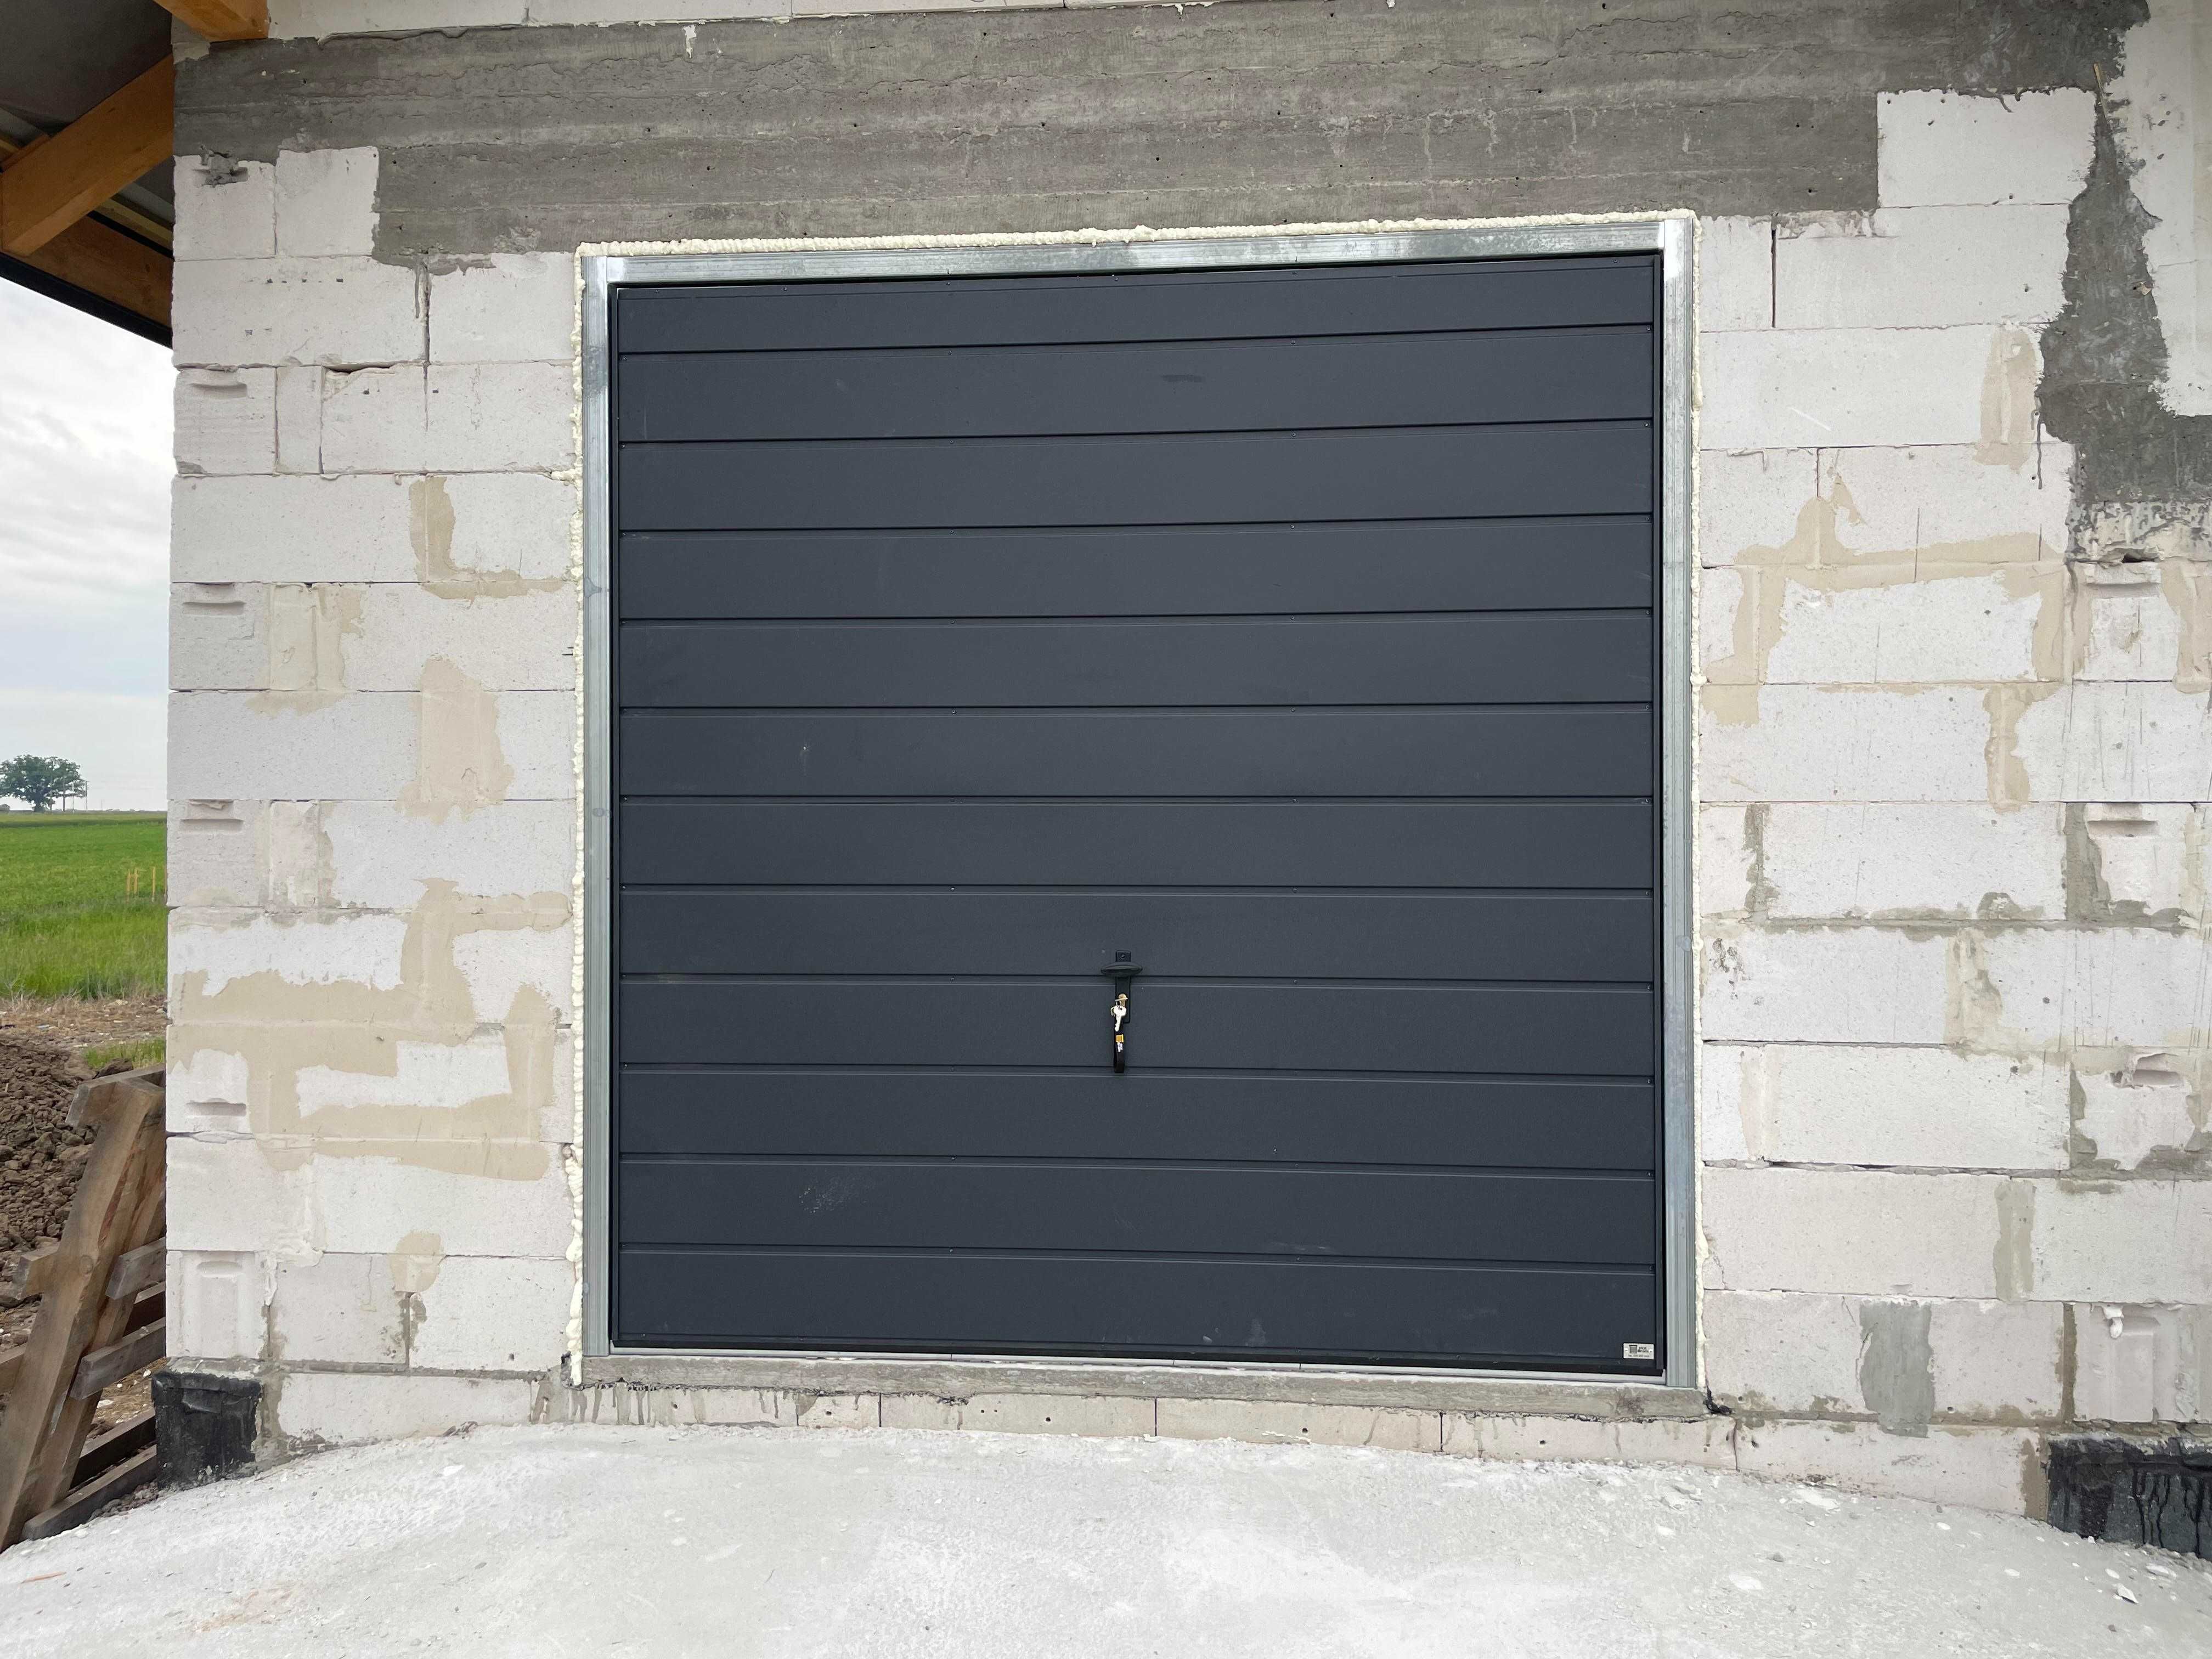 Brama garażowa Różne wymiary PRODUCENT